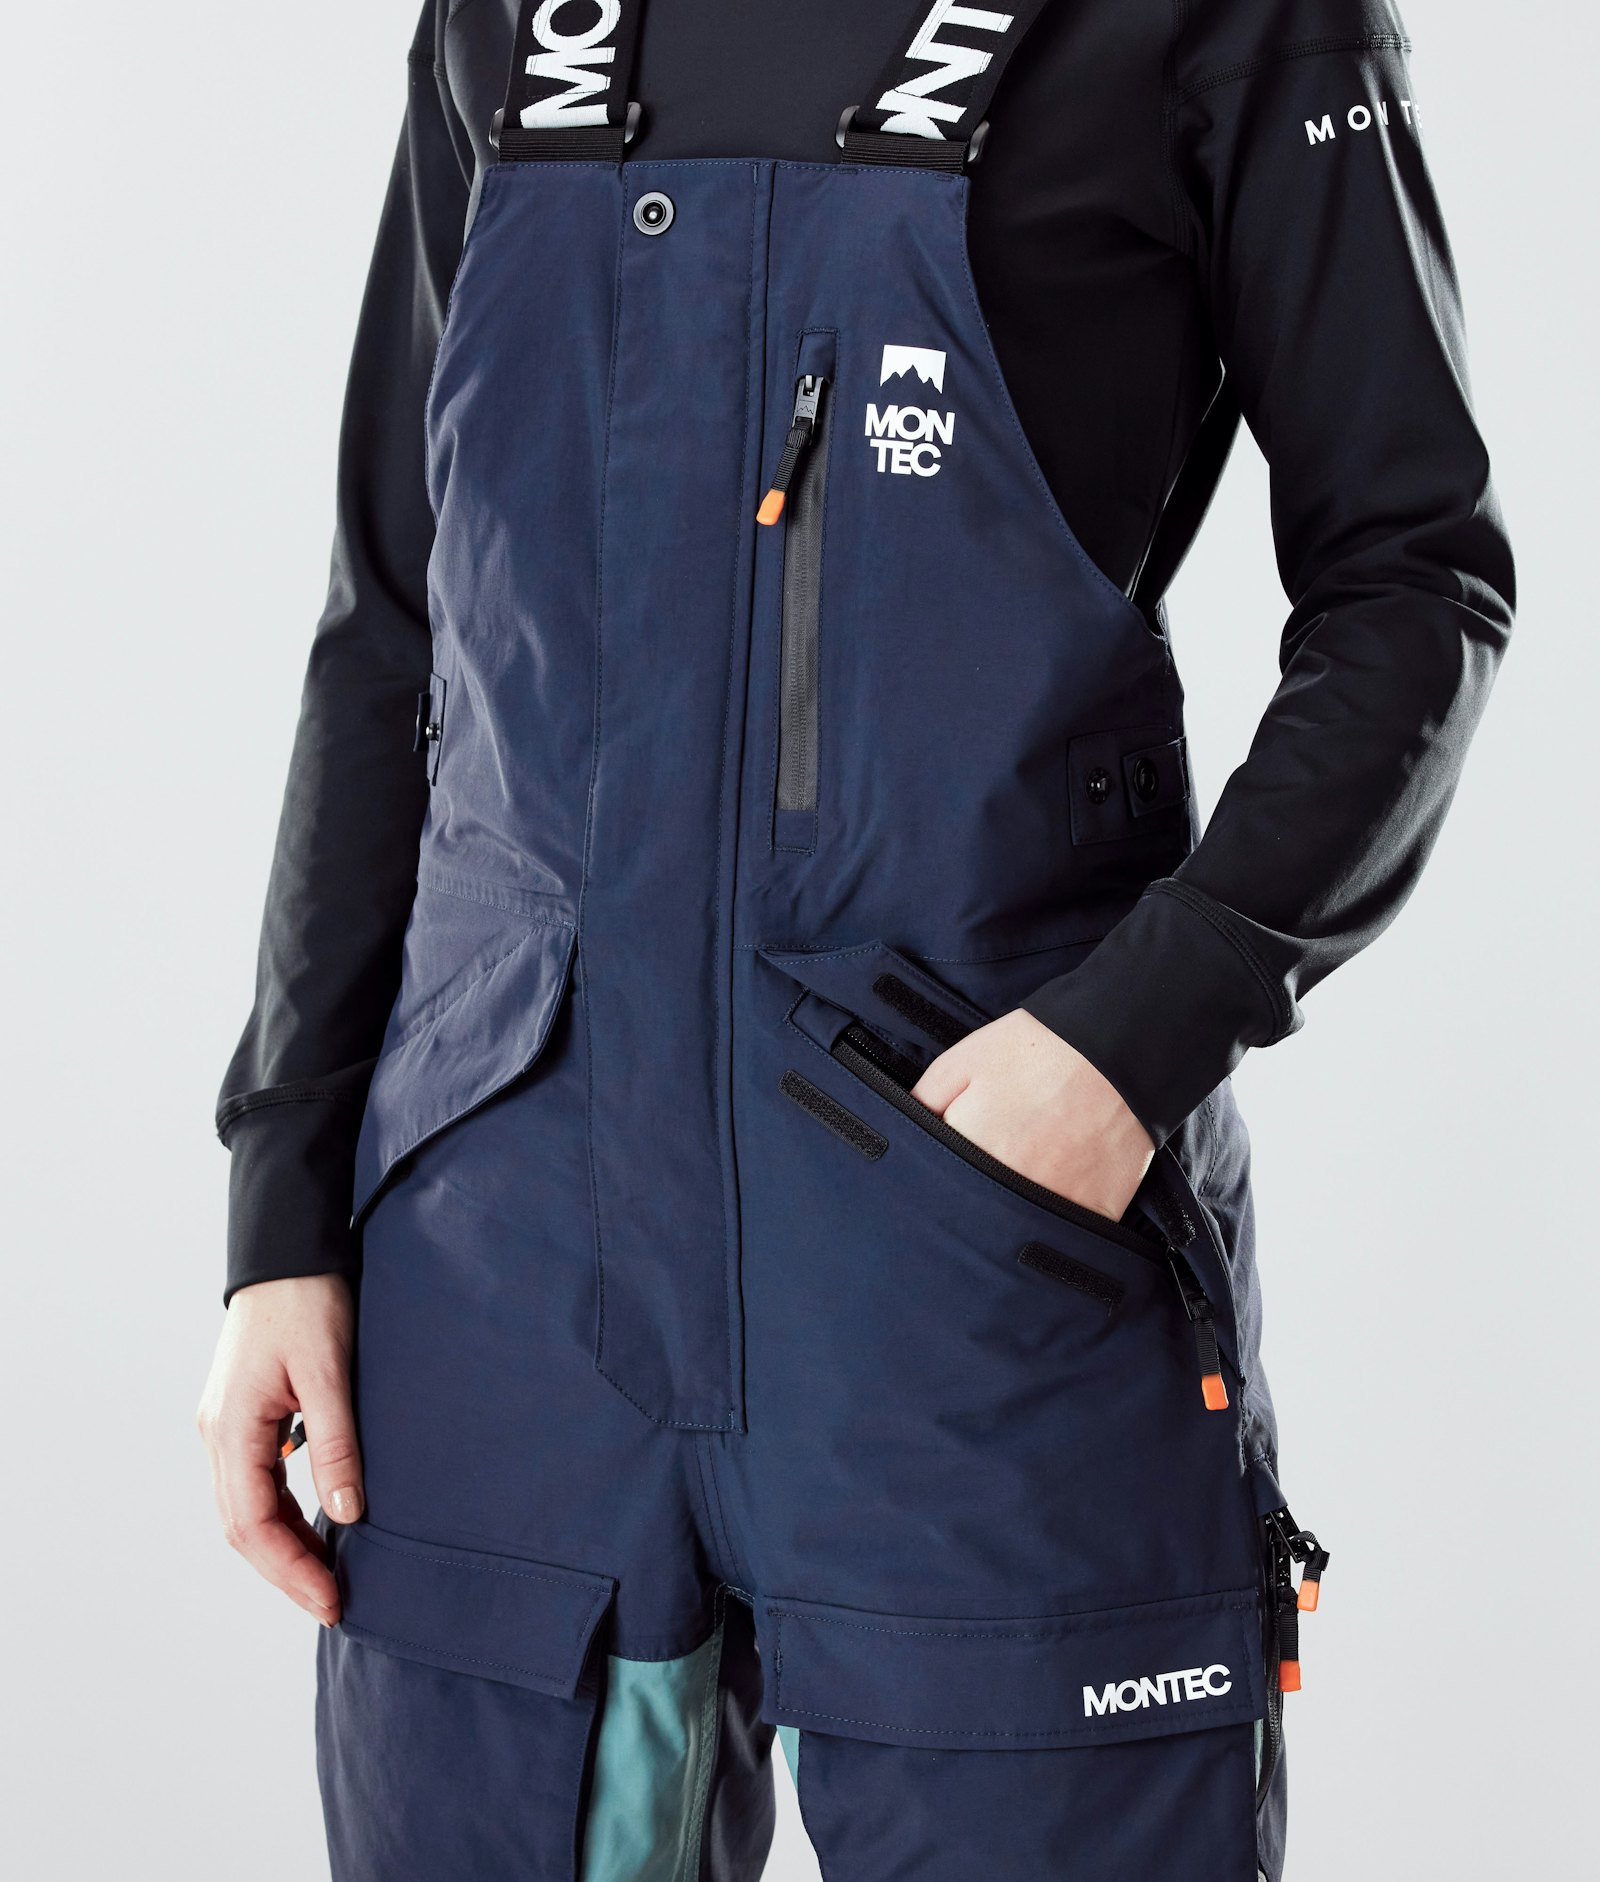 Fawk W 2020 Kalhoty na Snowboard Dámské Marine/Atlantic/Light Grey